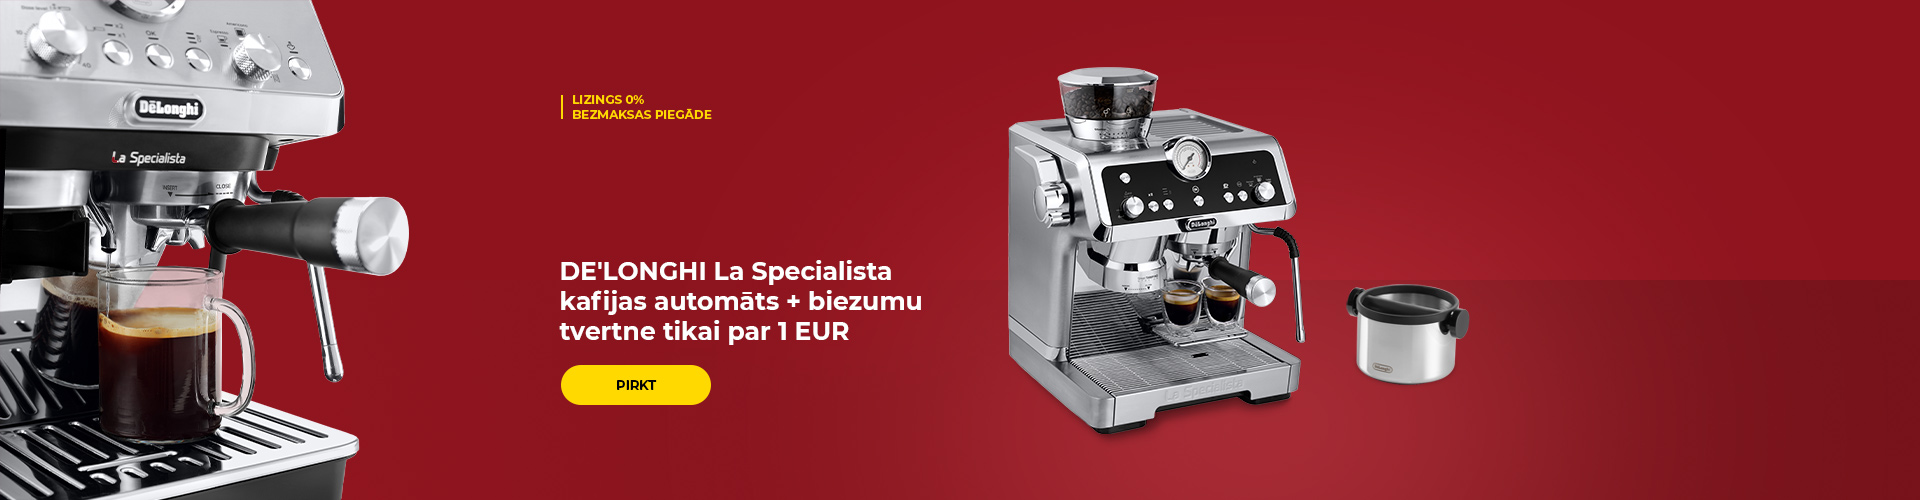 DE'LONGHI La Specialista kafijas automāts + biezumu tvertne tikai par 1 EUR